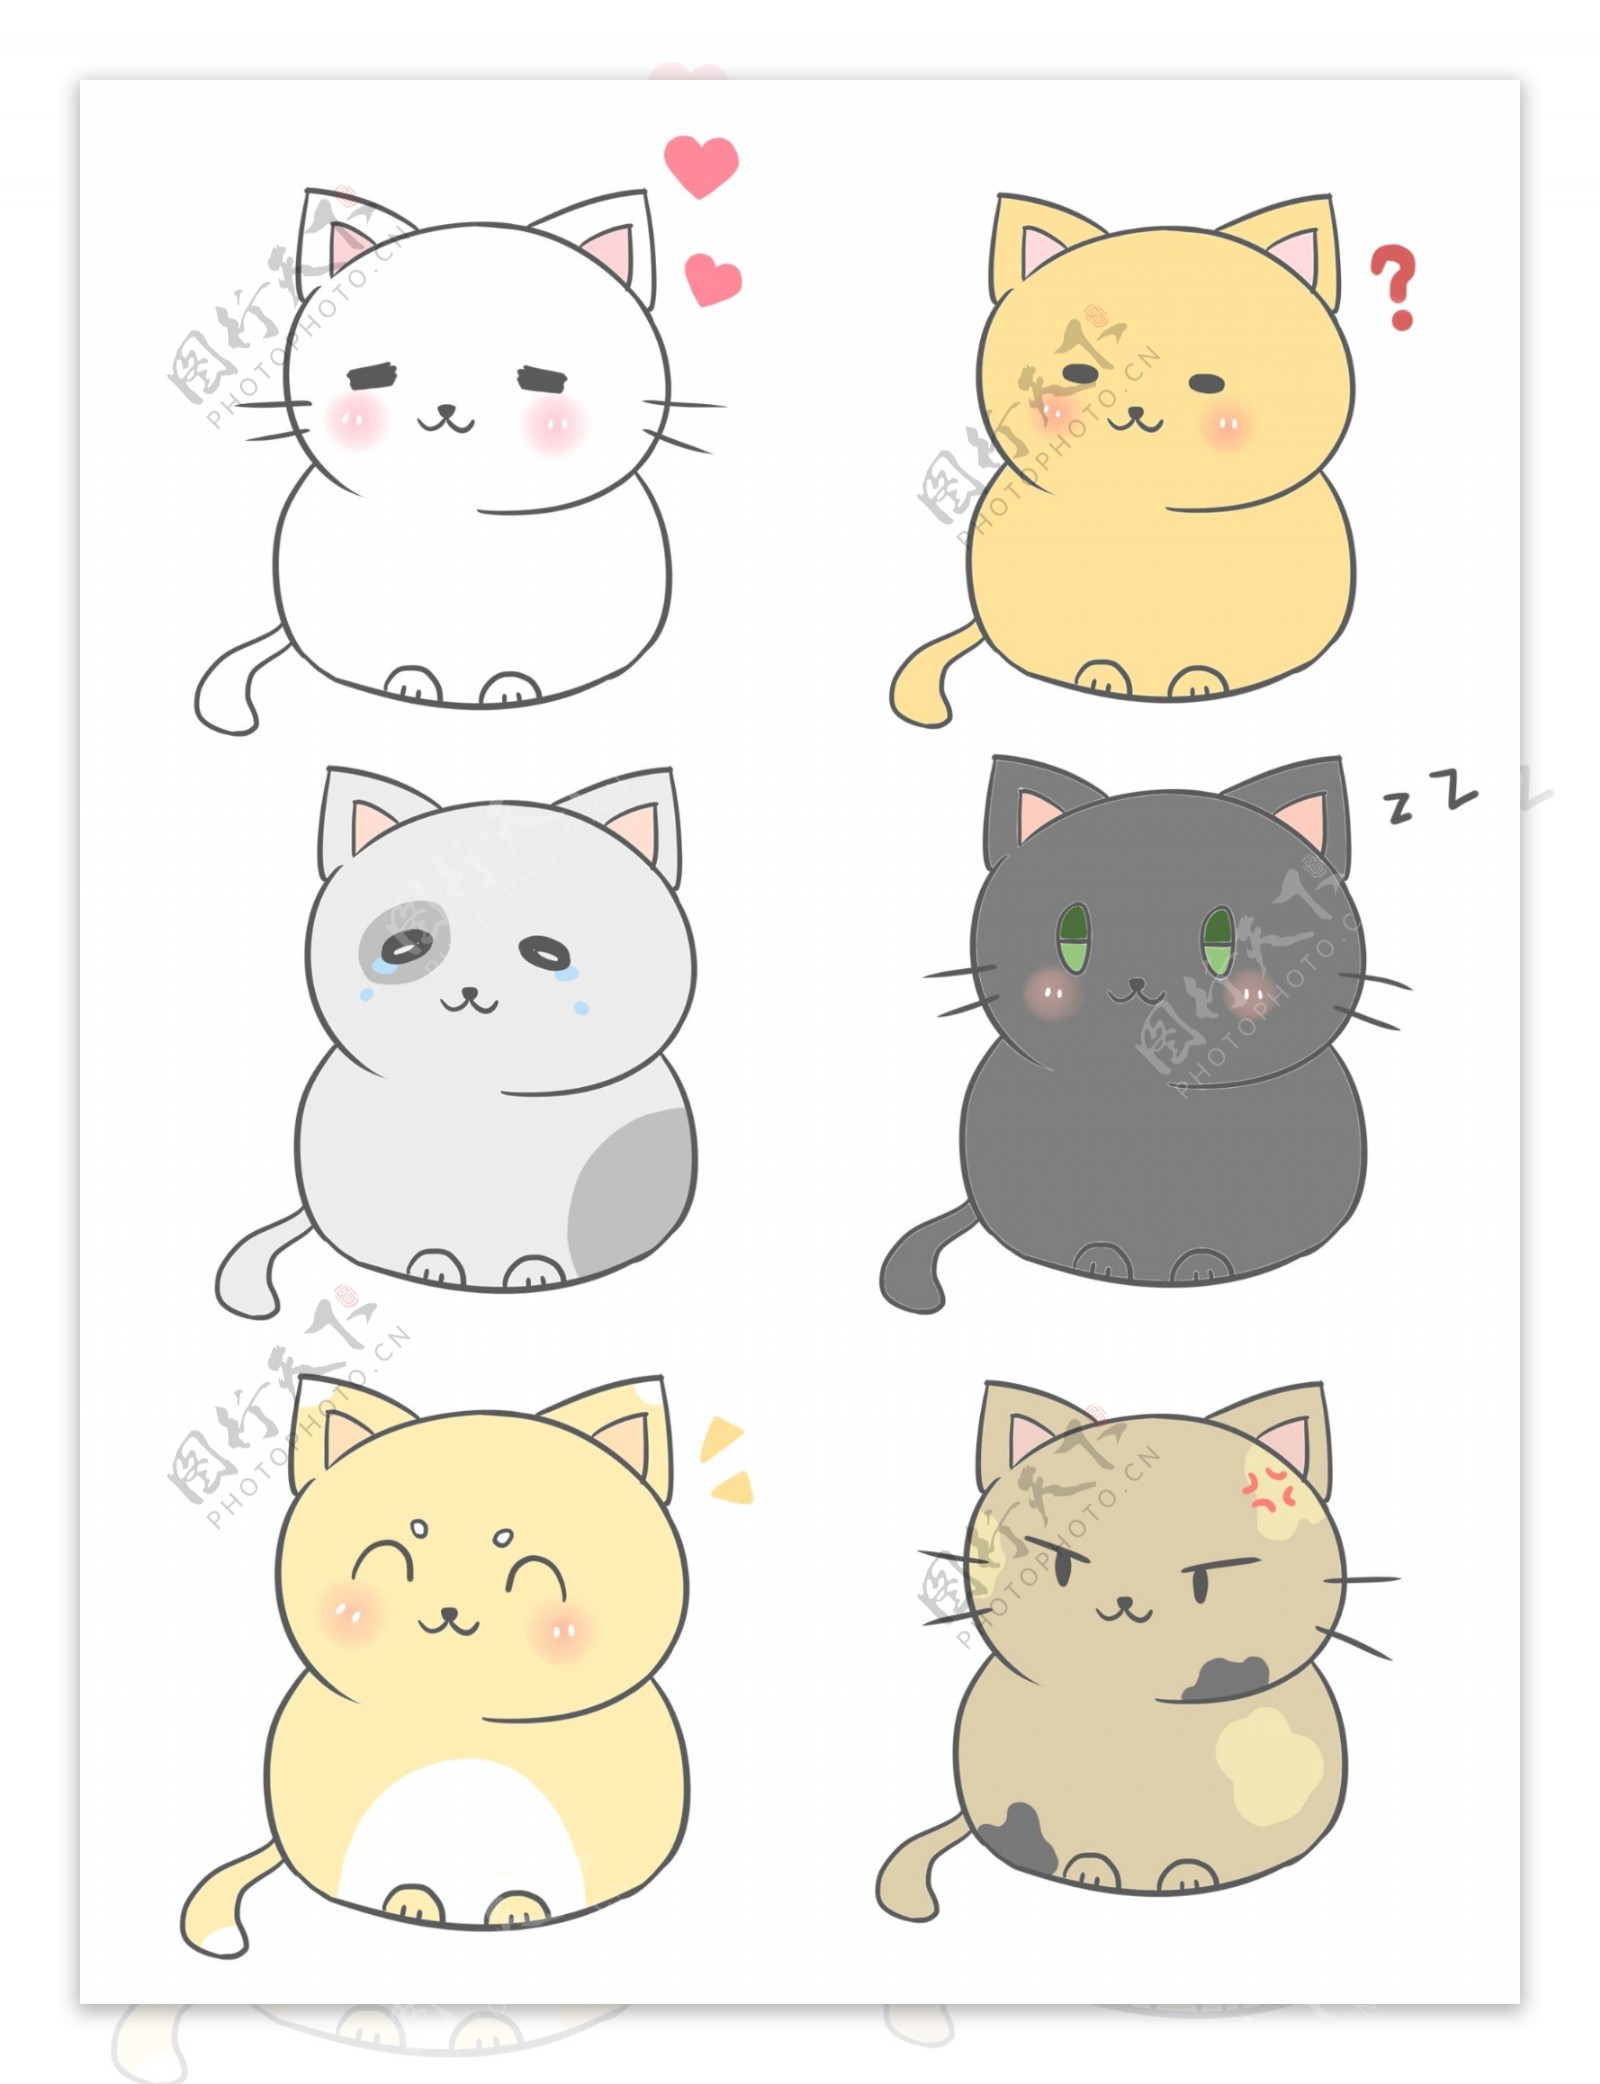 可爱卡通日系清新猫咪表情包通用套图